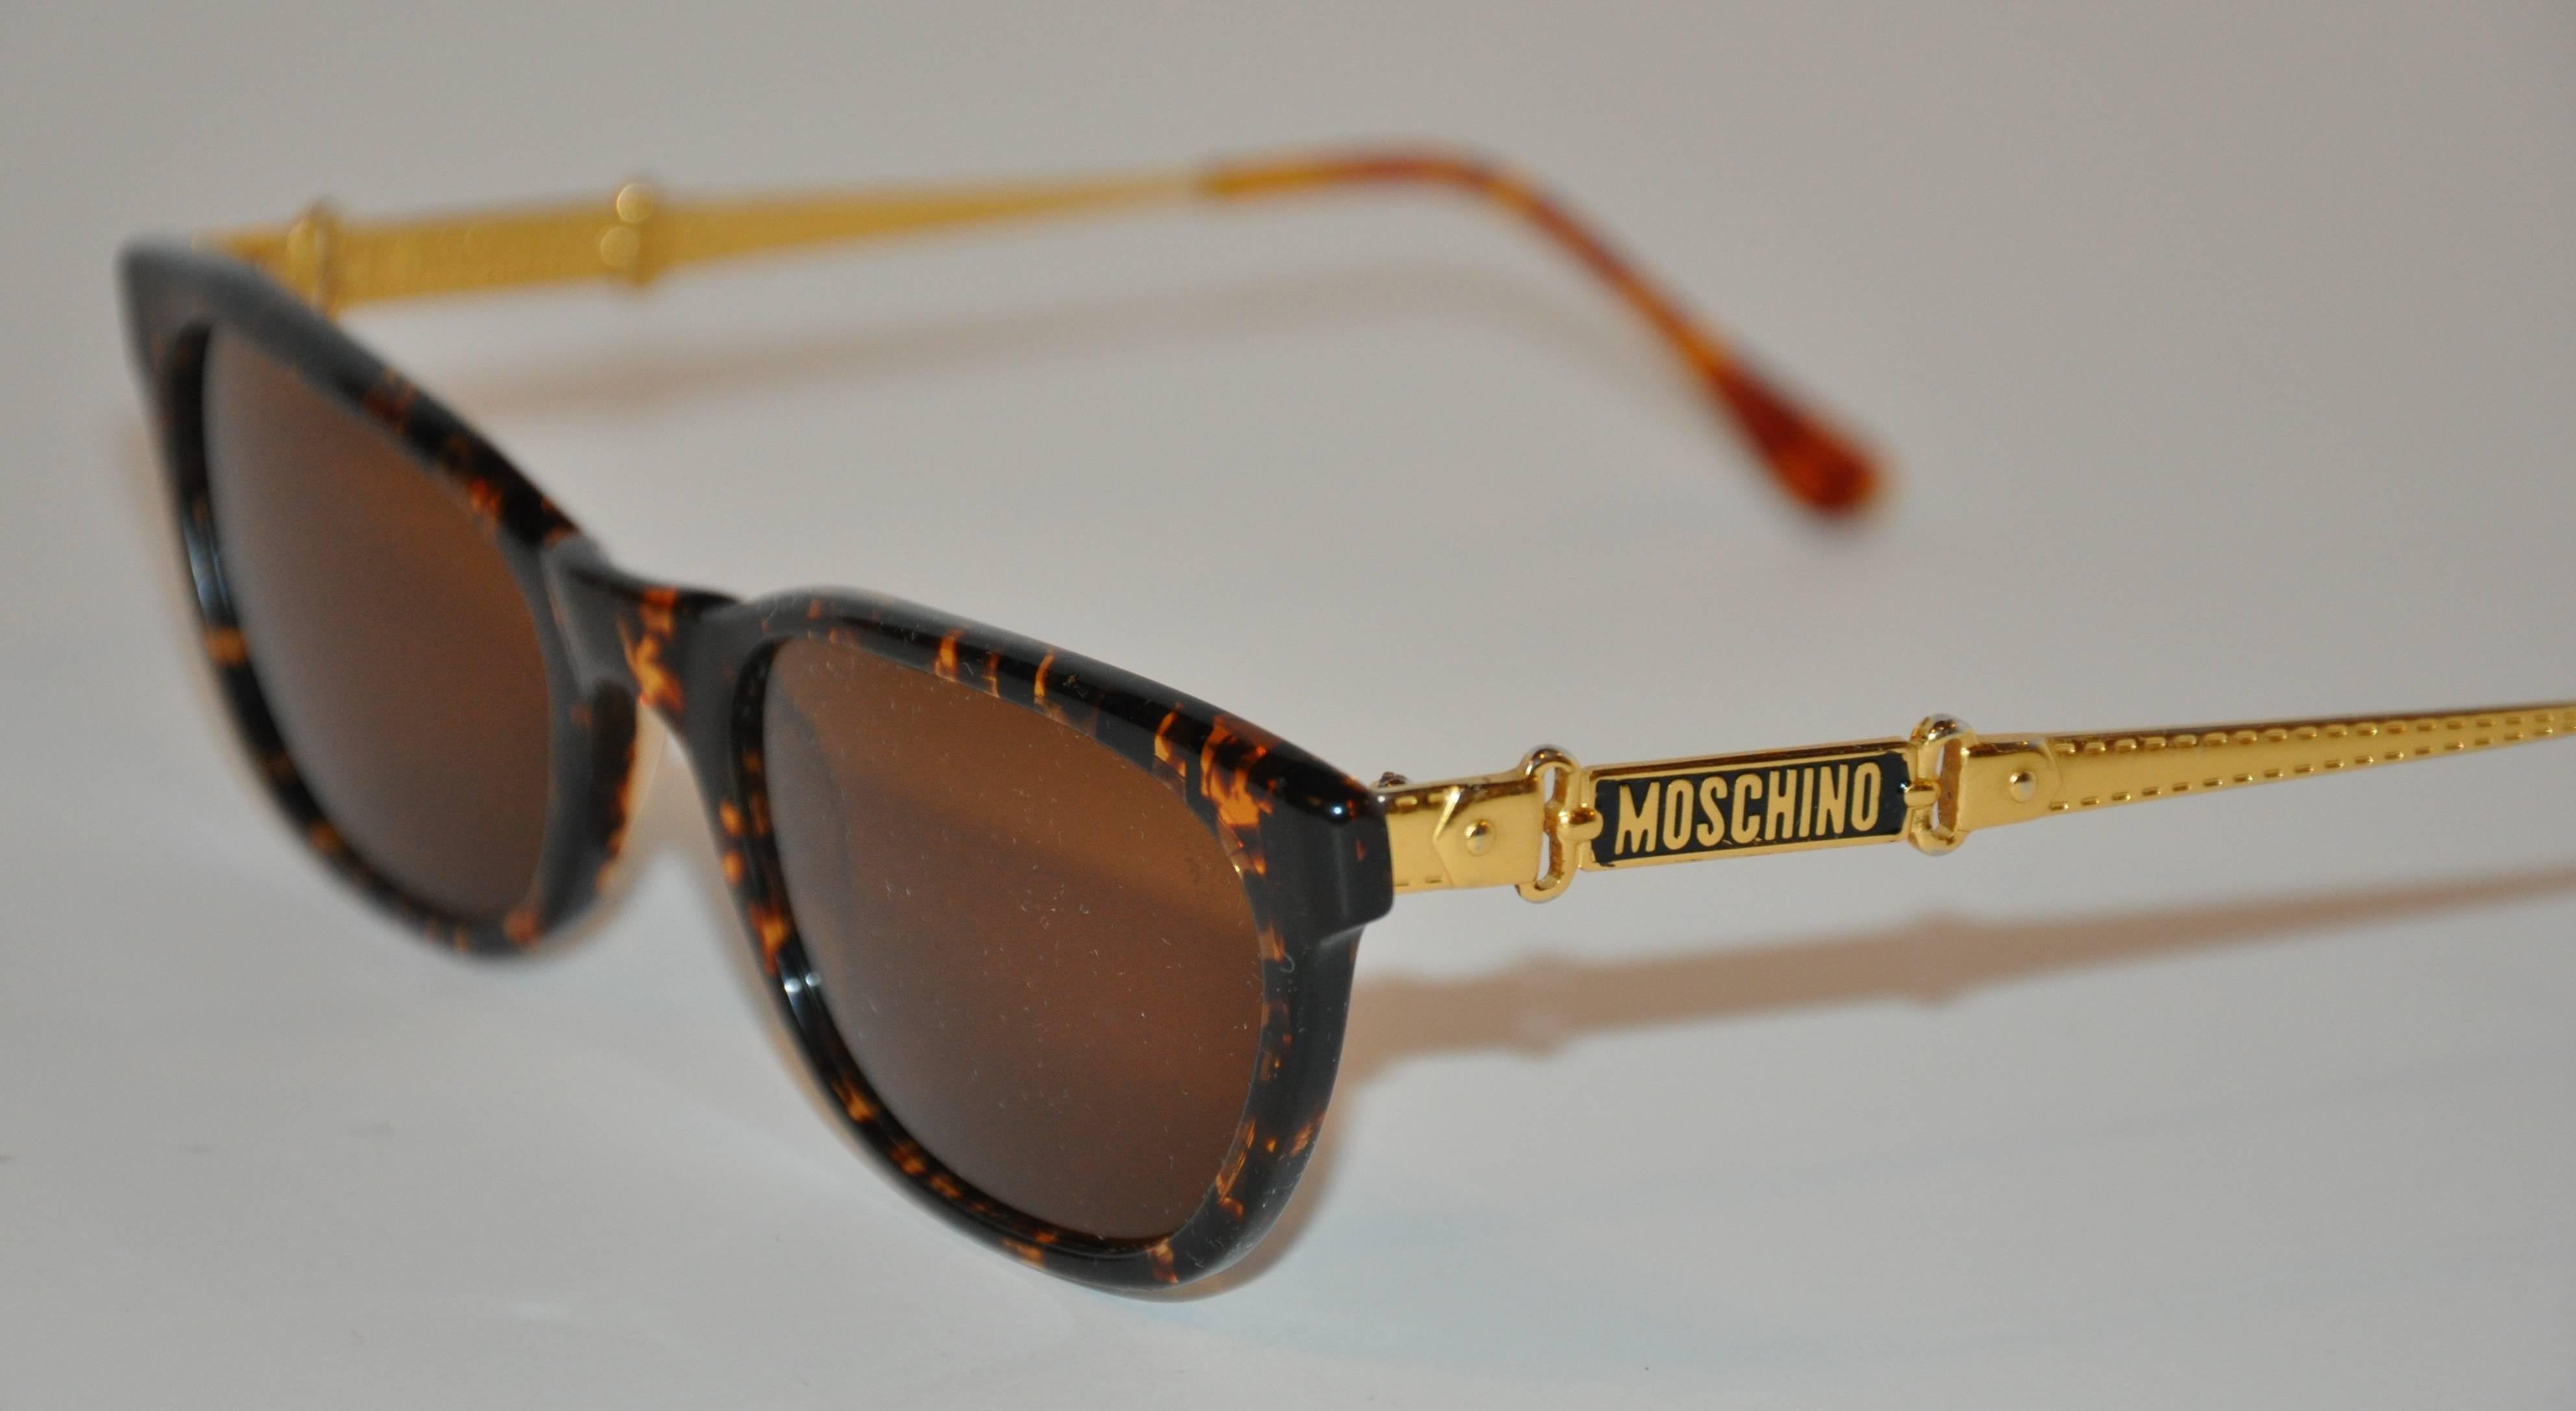 Die wundervoll detaillierte Sonnenbrille aus Schildpatt von Moschino ist sowohl auf der Außenseite als auch auf der Innenseite beider Bügel mit dem Namensschild versehen. Die Arme sind außerdem mit goldfarbenen, gravierten Schnallen und